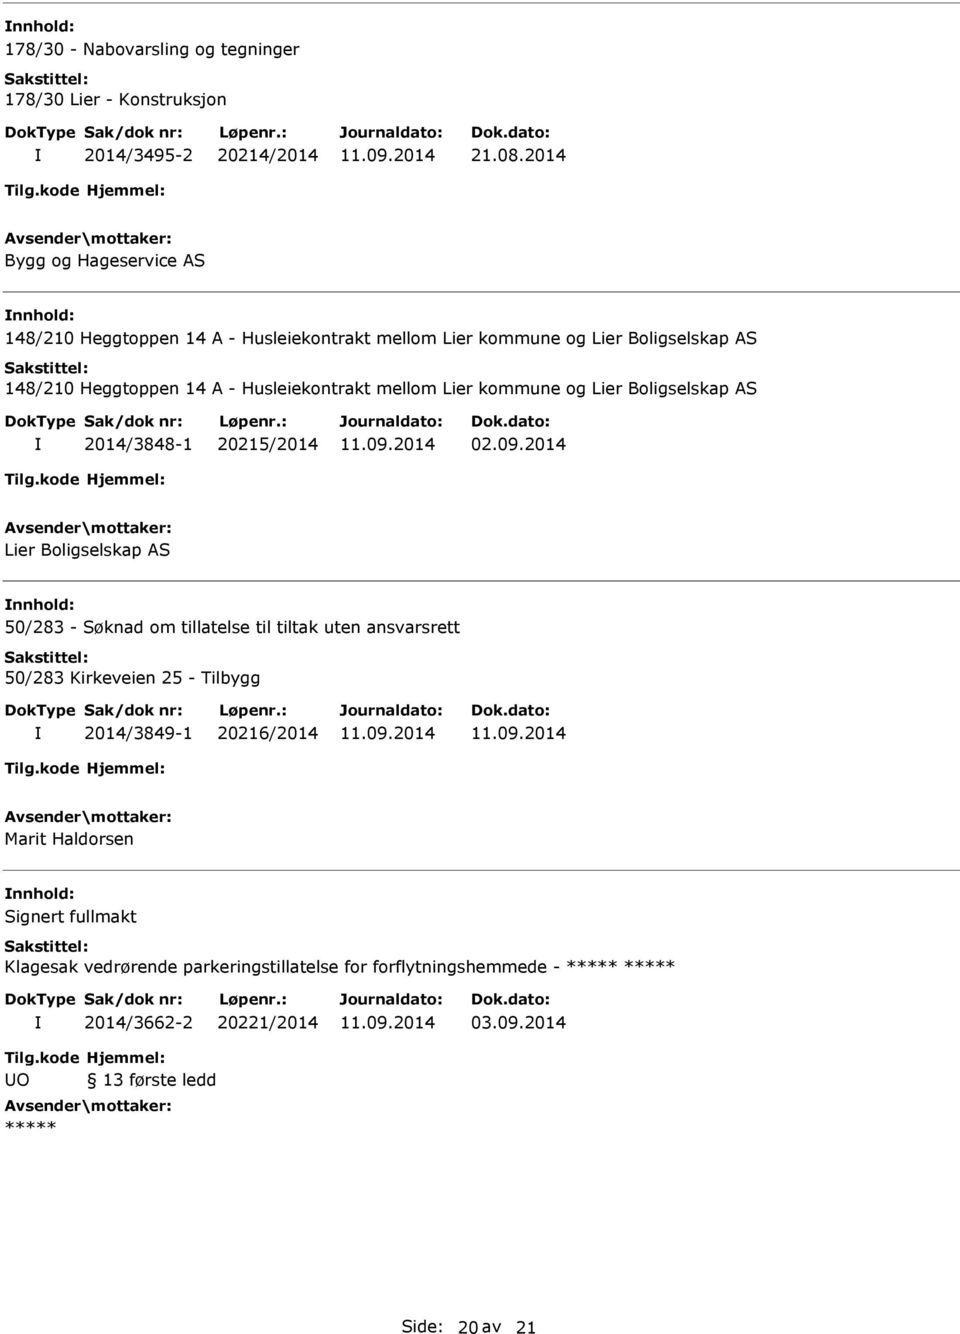 Husleiekontrakt mellom Lier kommune og Lier Boligselskap AS 2014/3848-1 20215/2014 02.09.